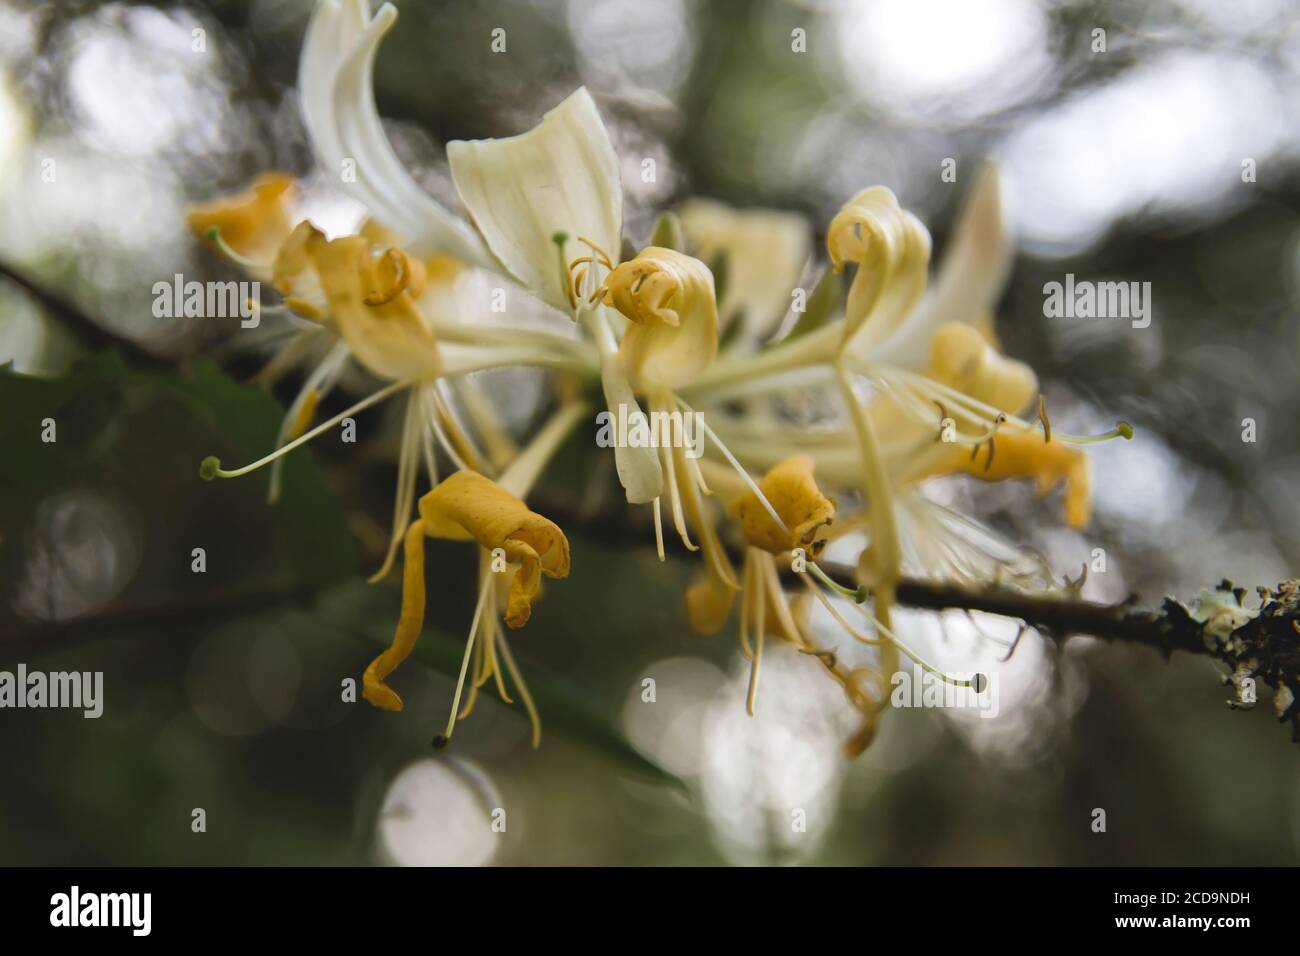 Detail of wild honeysucke creamy yellowish flowers blooming Stock Photo